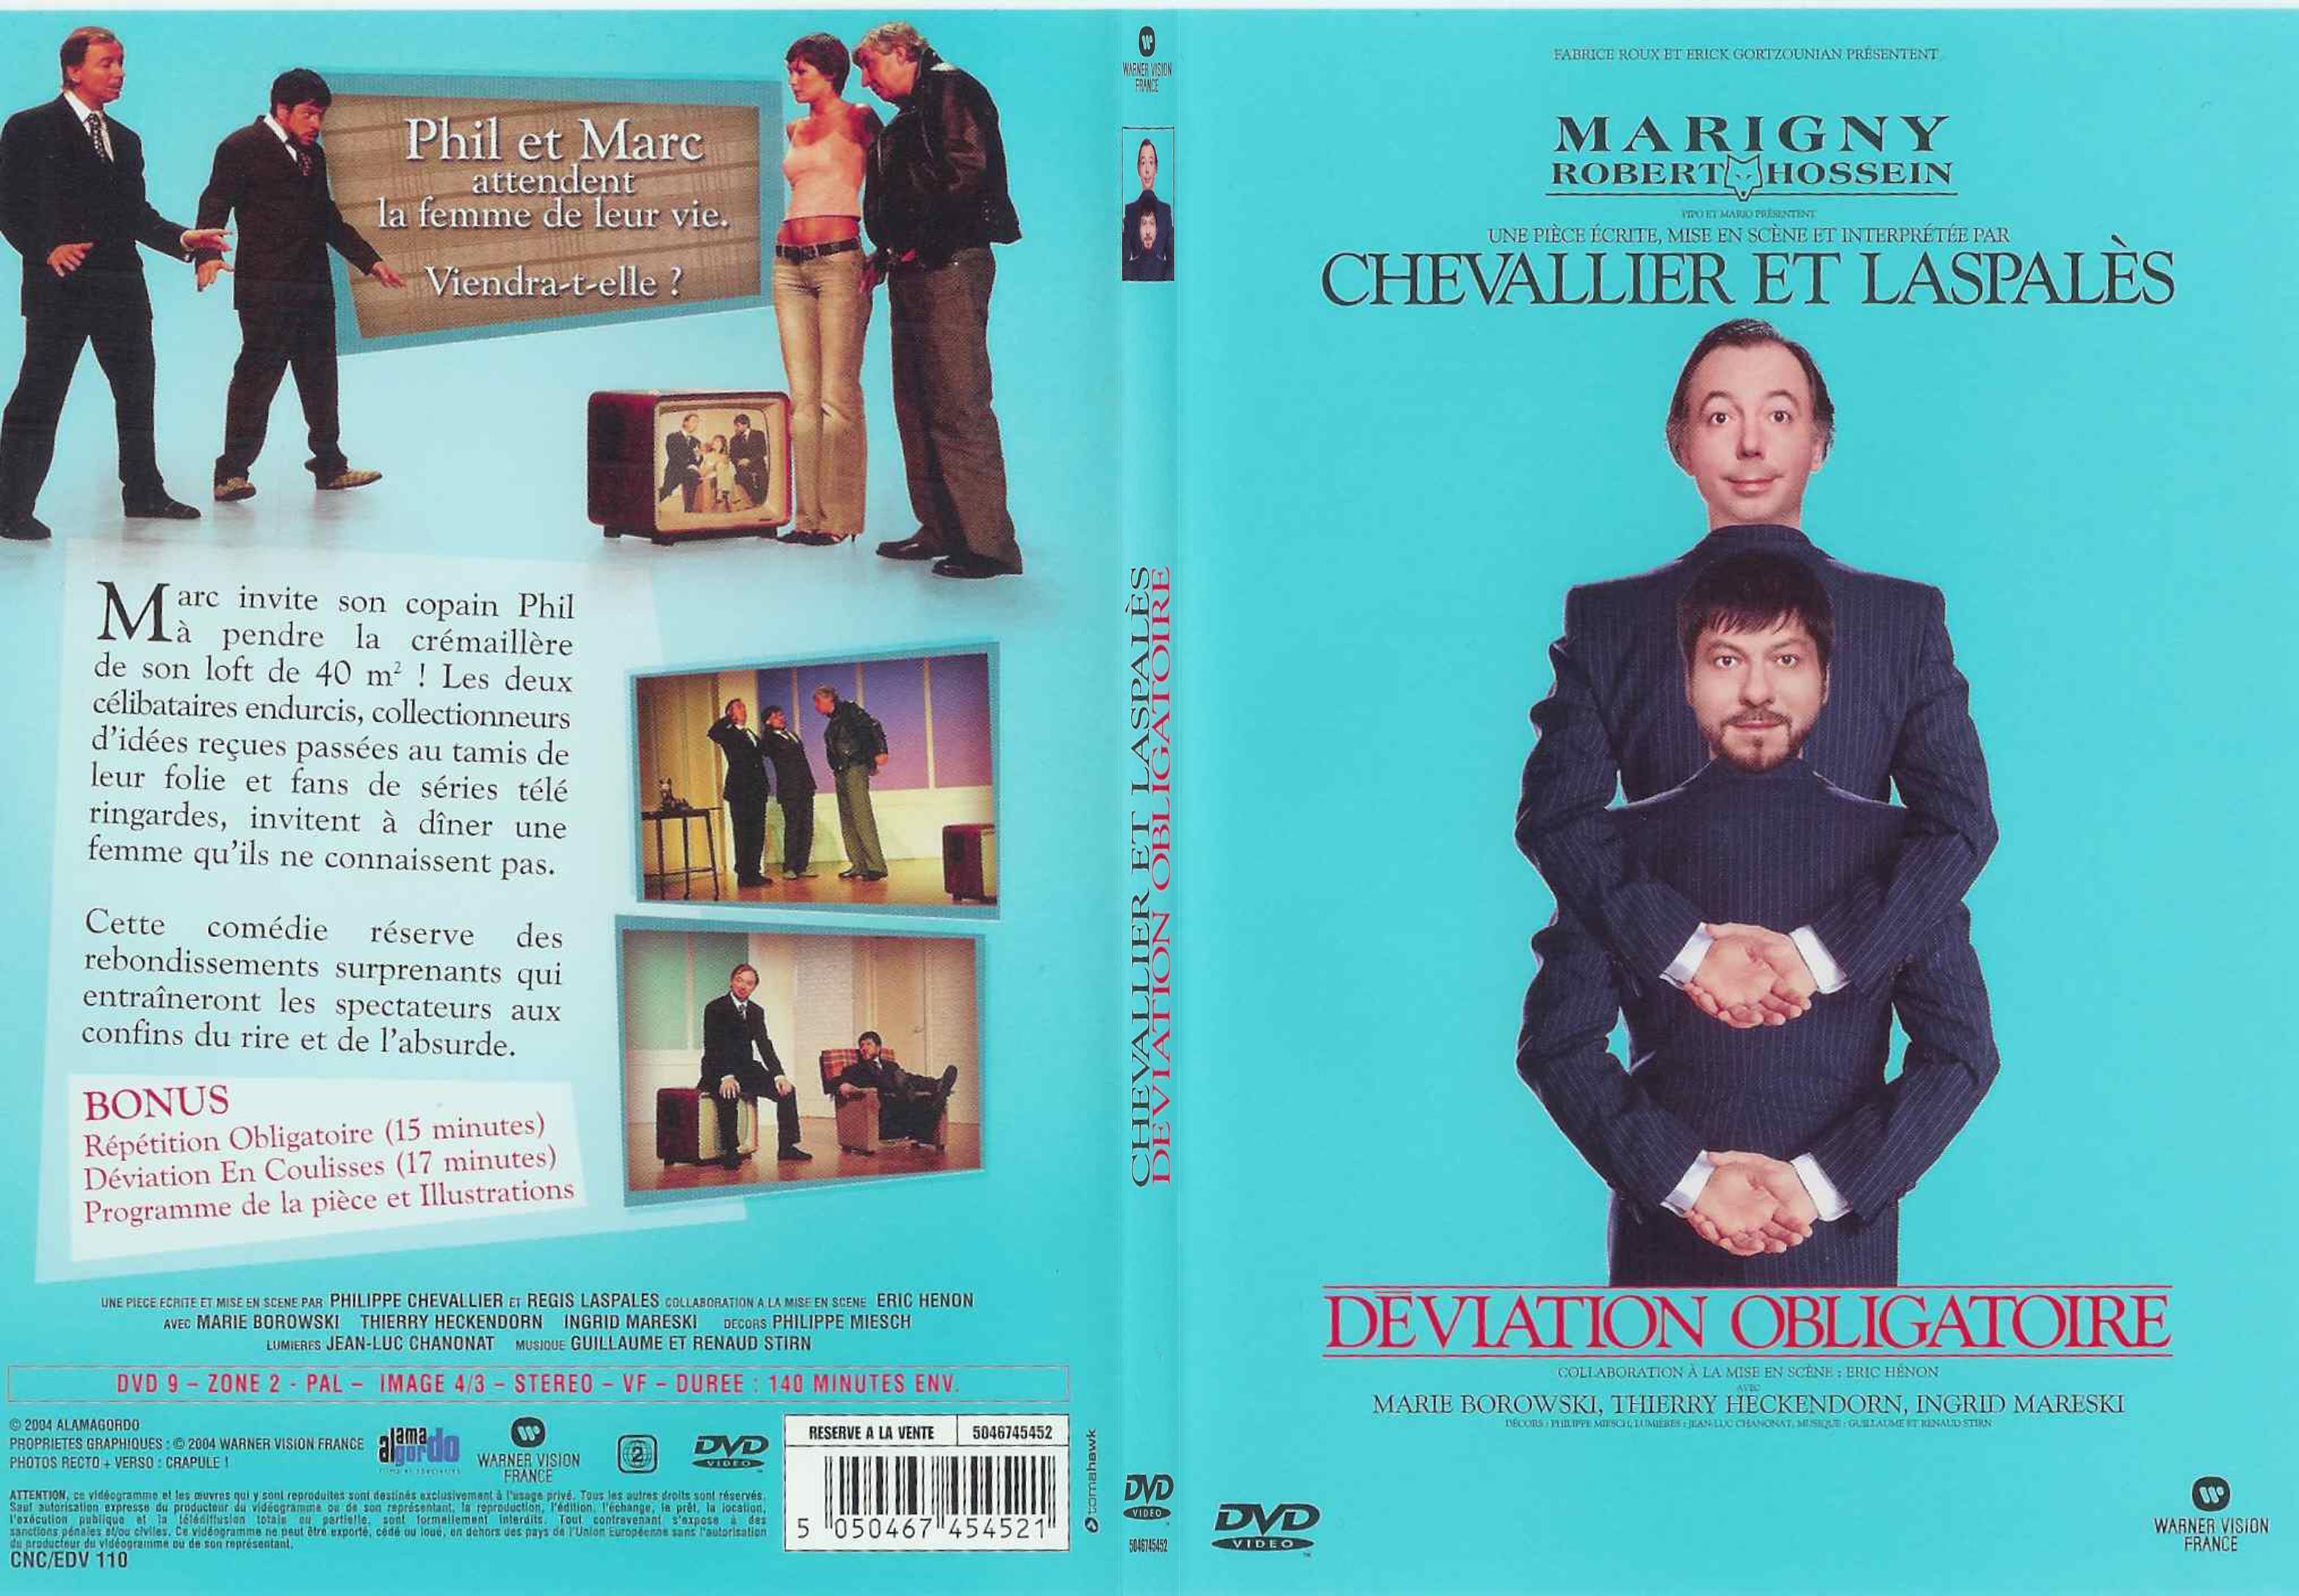 Jaquette DVD Chevalier et laspales deviation obligatoire - SLIM